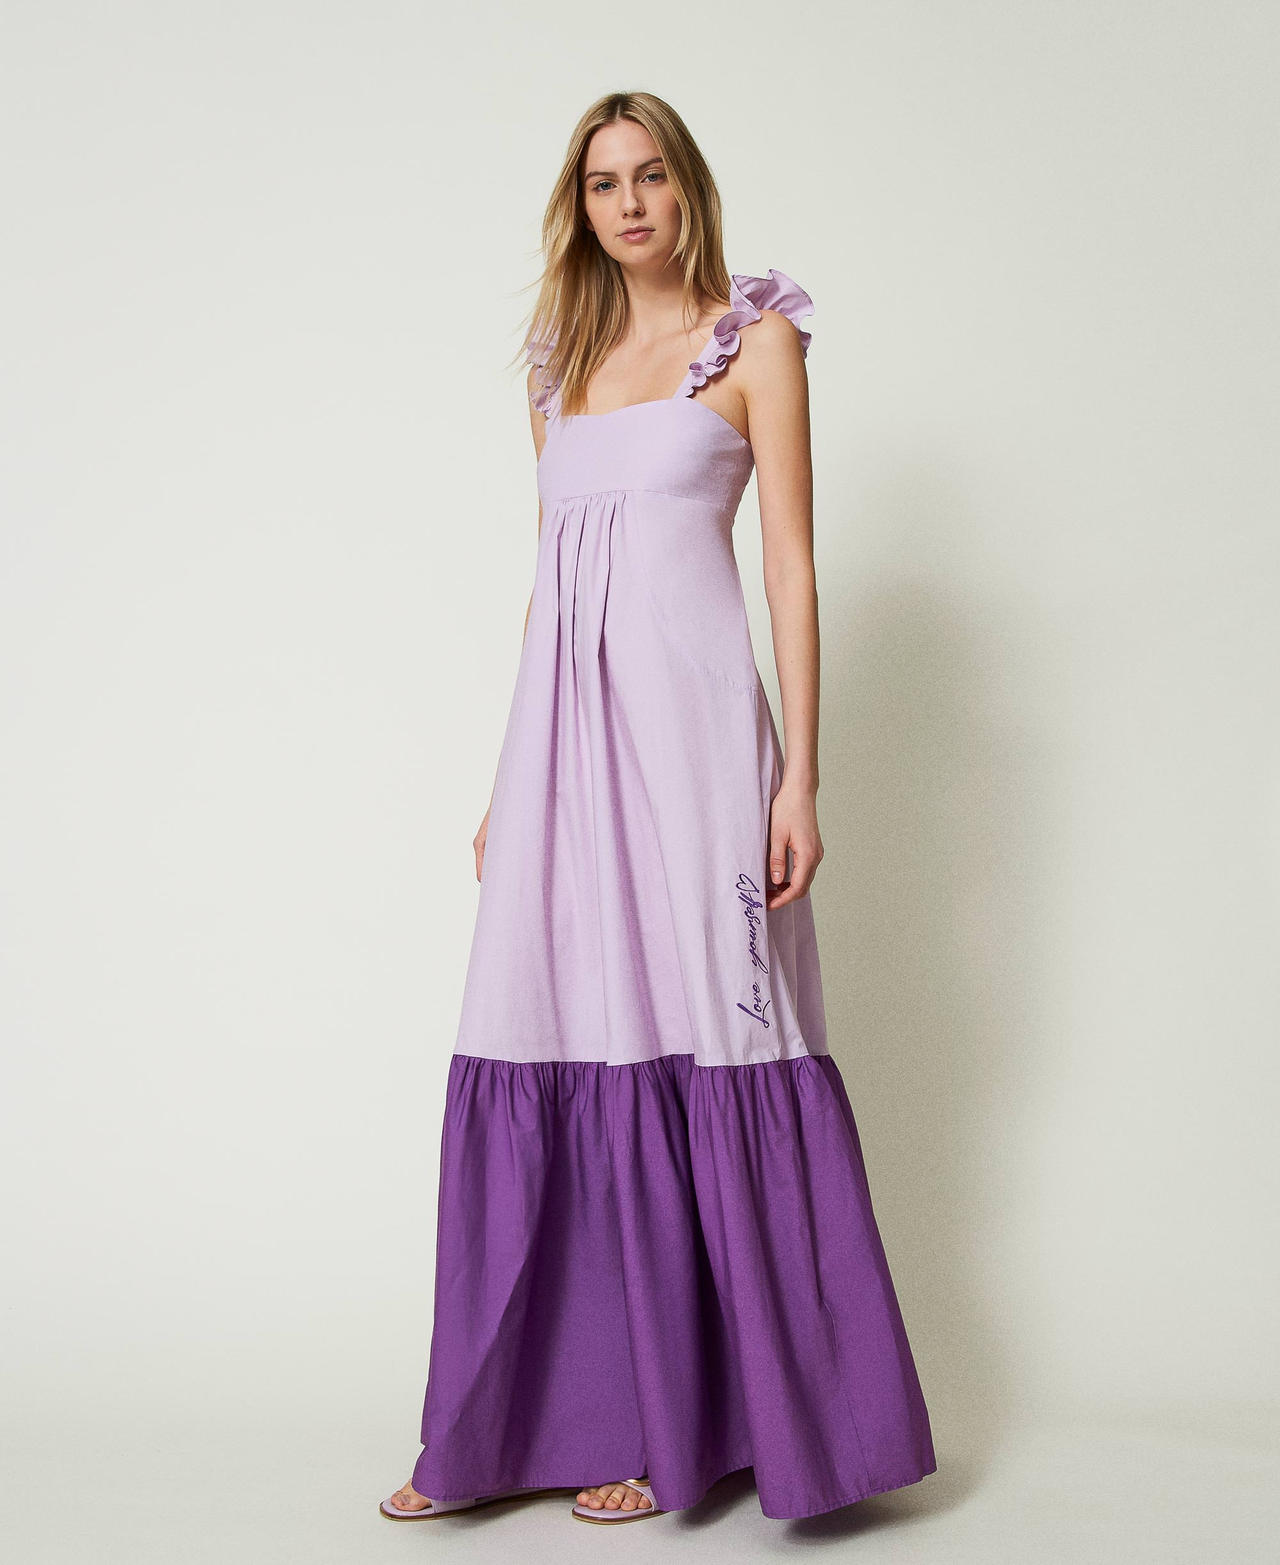 Robe longue en popeline avec volants Bicolore Violet « Lavande »/Violet Meadow Femme 241AT2088-03